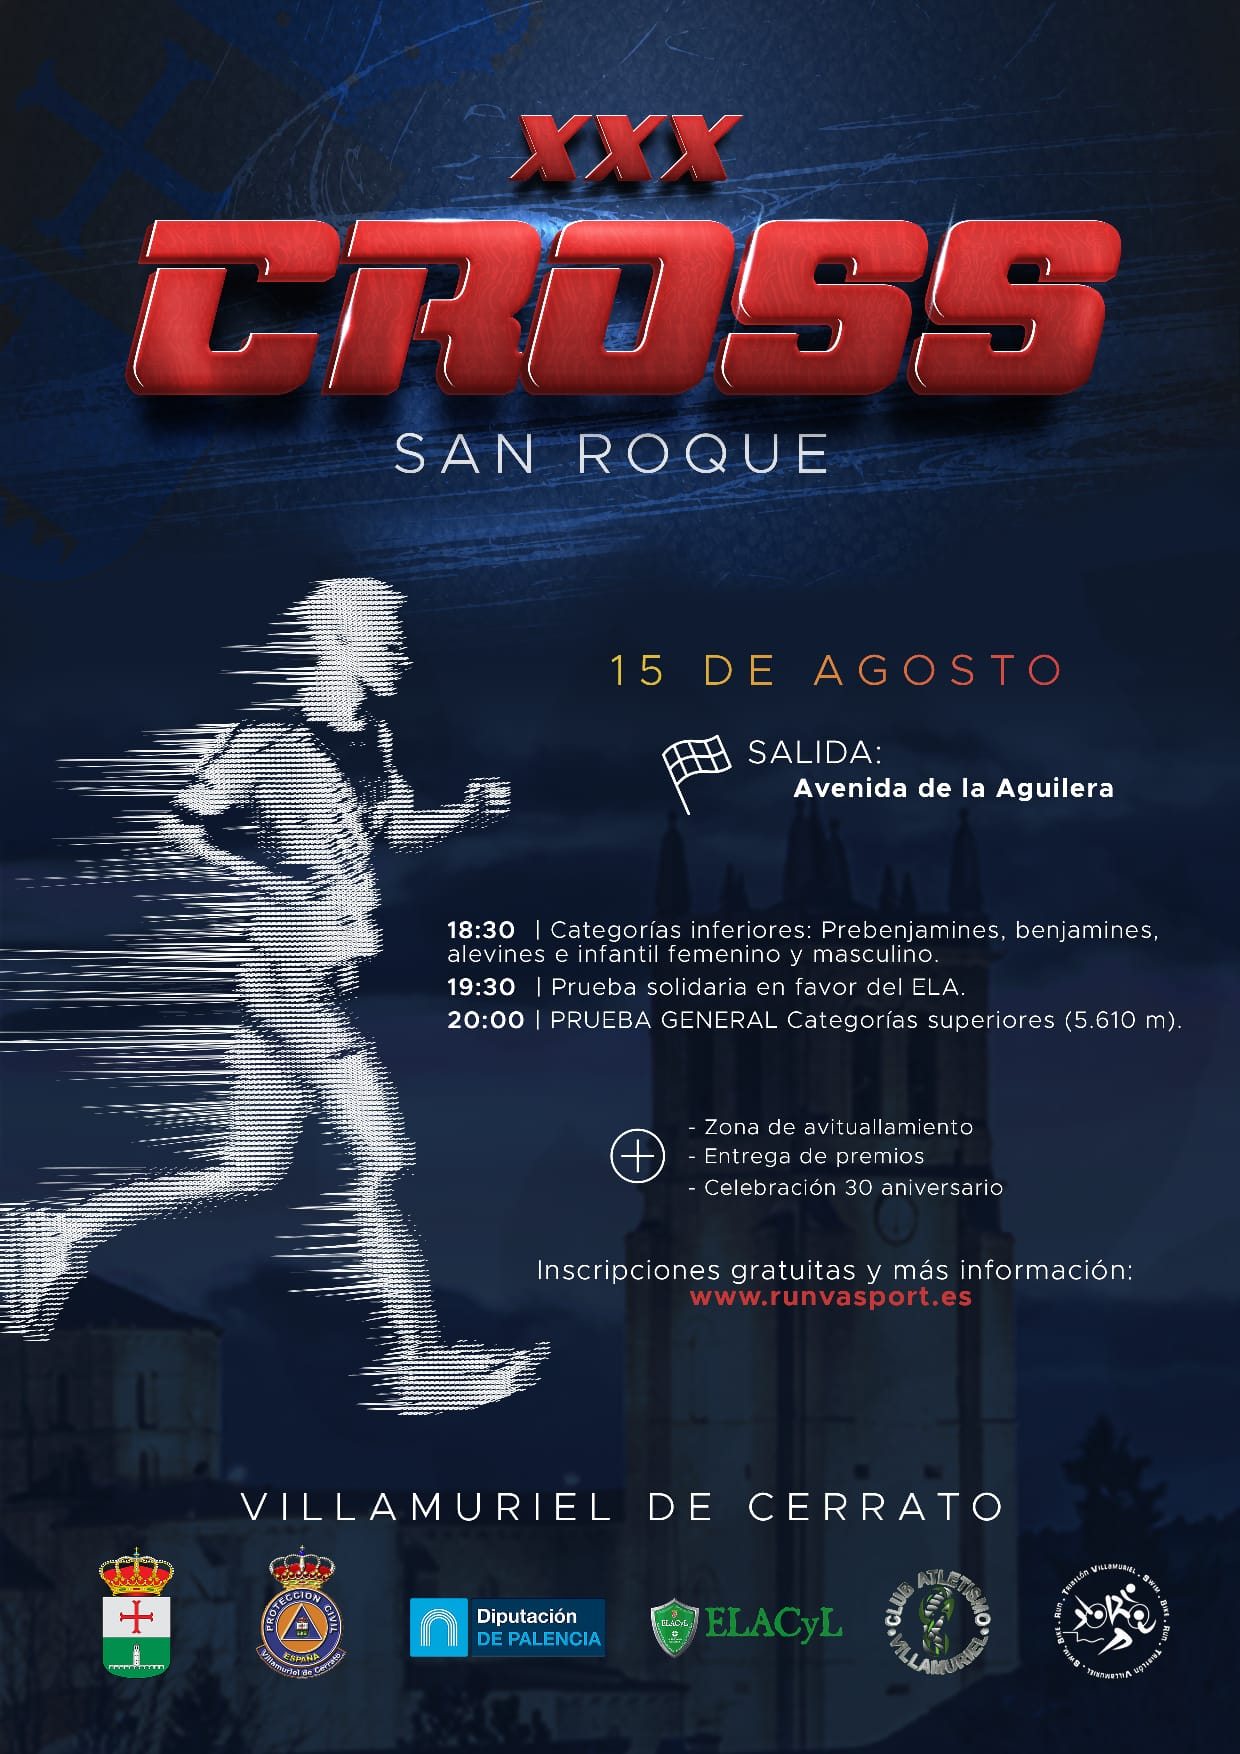 Event Poster XXX CROSS SAN ROQUE - VILLAMURIEL DE CERRATO